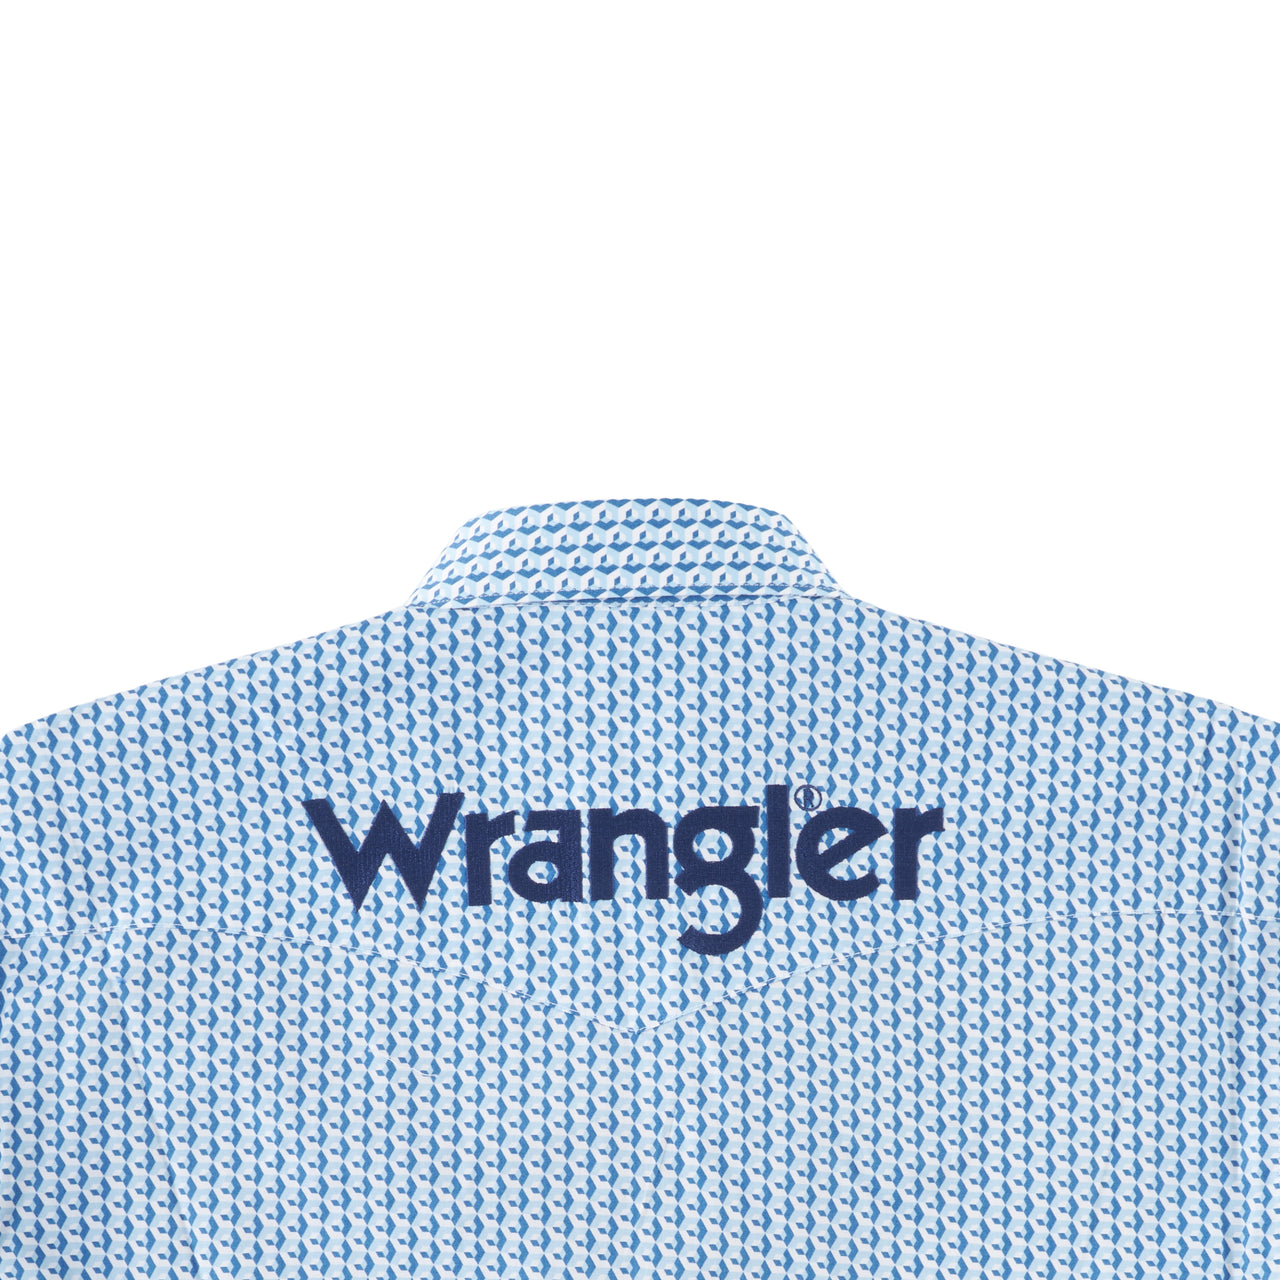 Wrangler Mens Geometric Logo Shirt - Blue